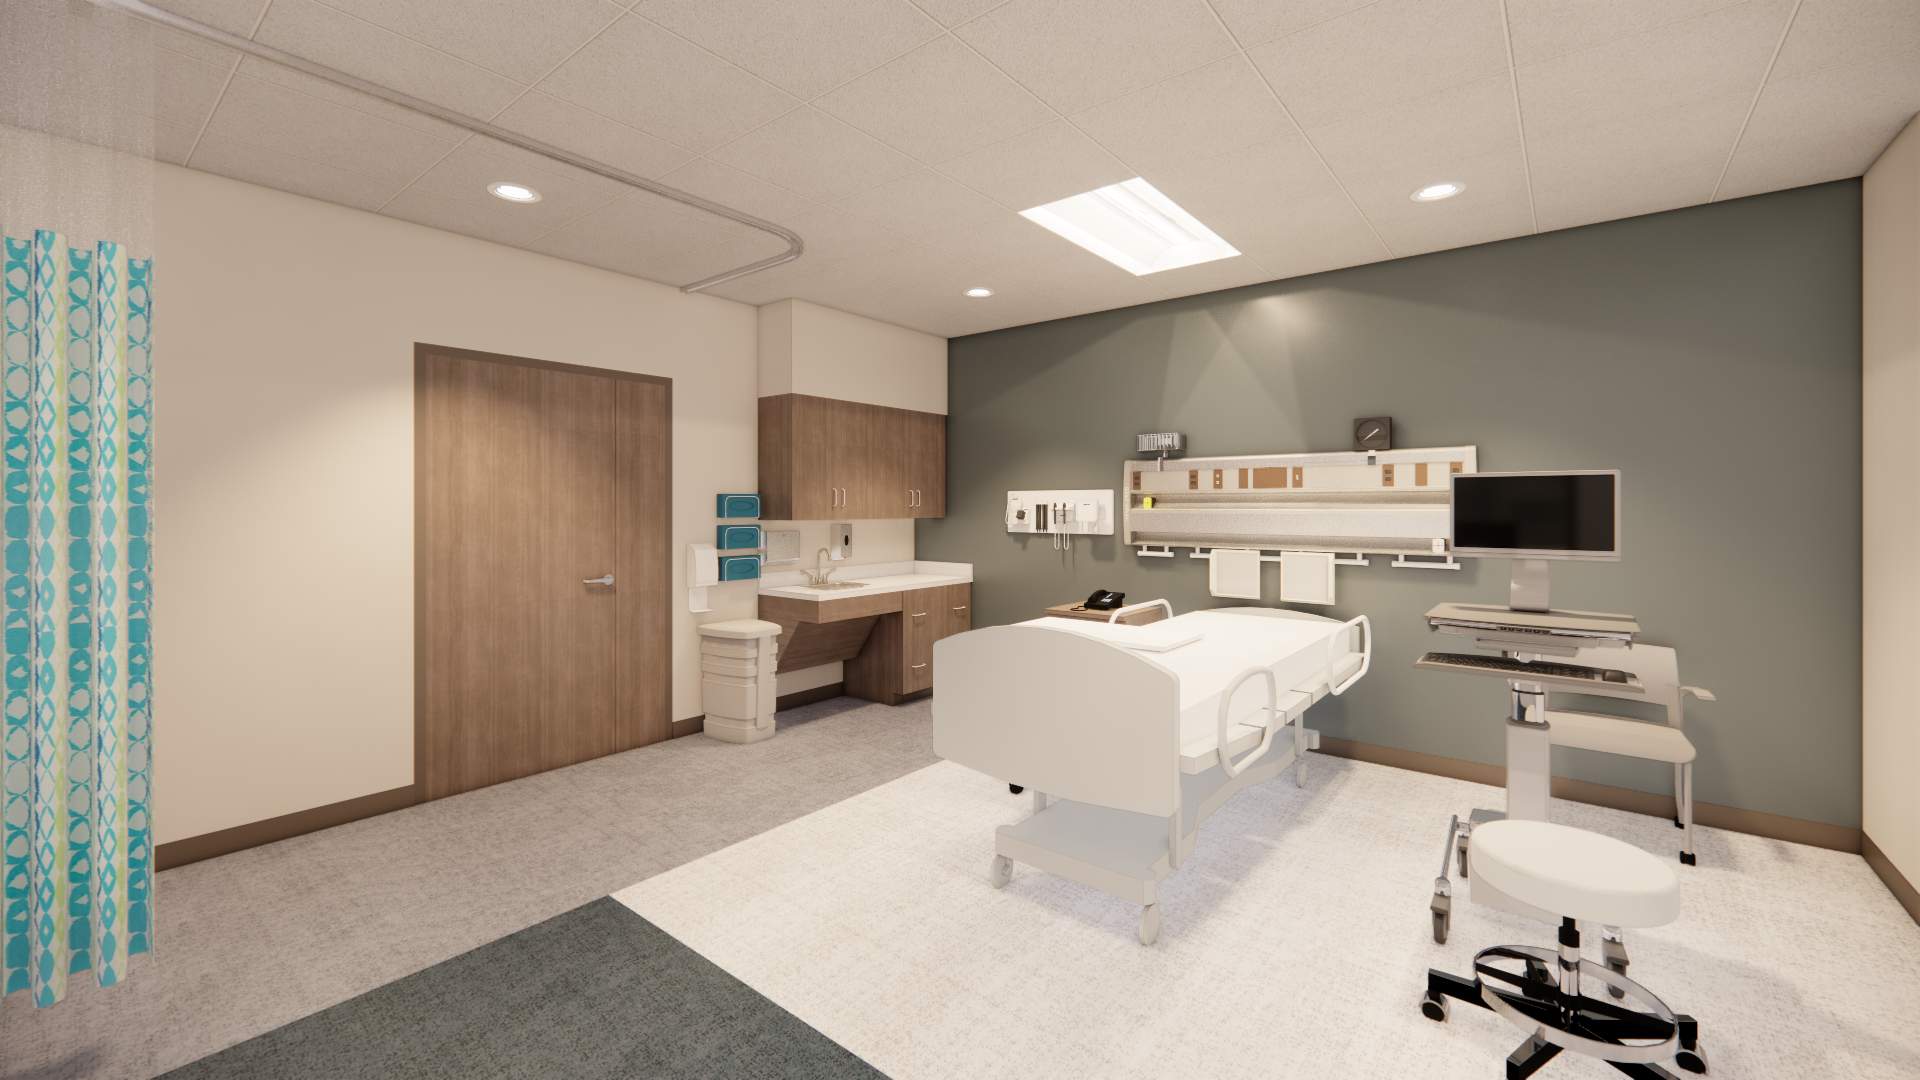 Interior rendering of new nursing building at LVC